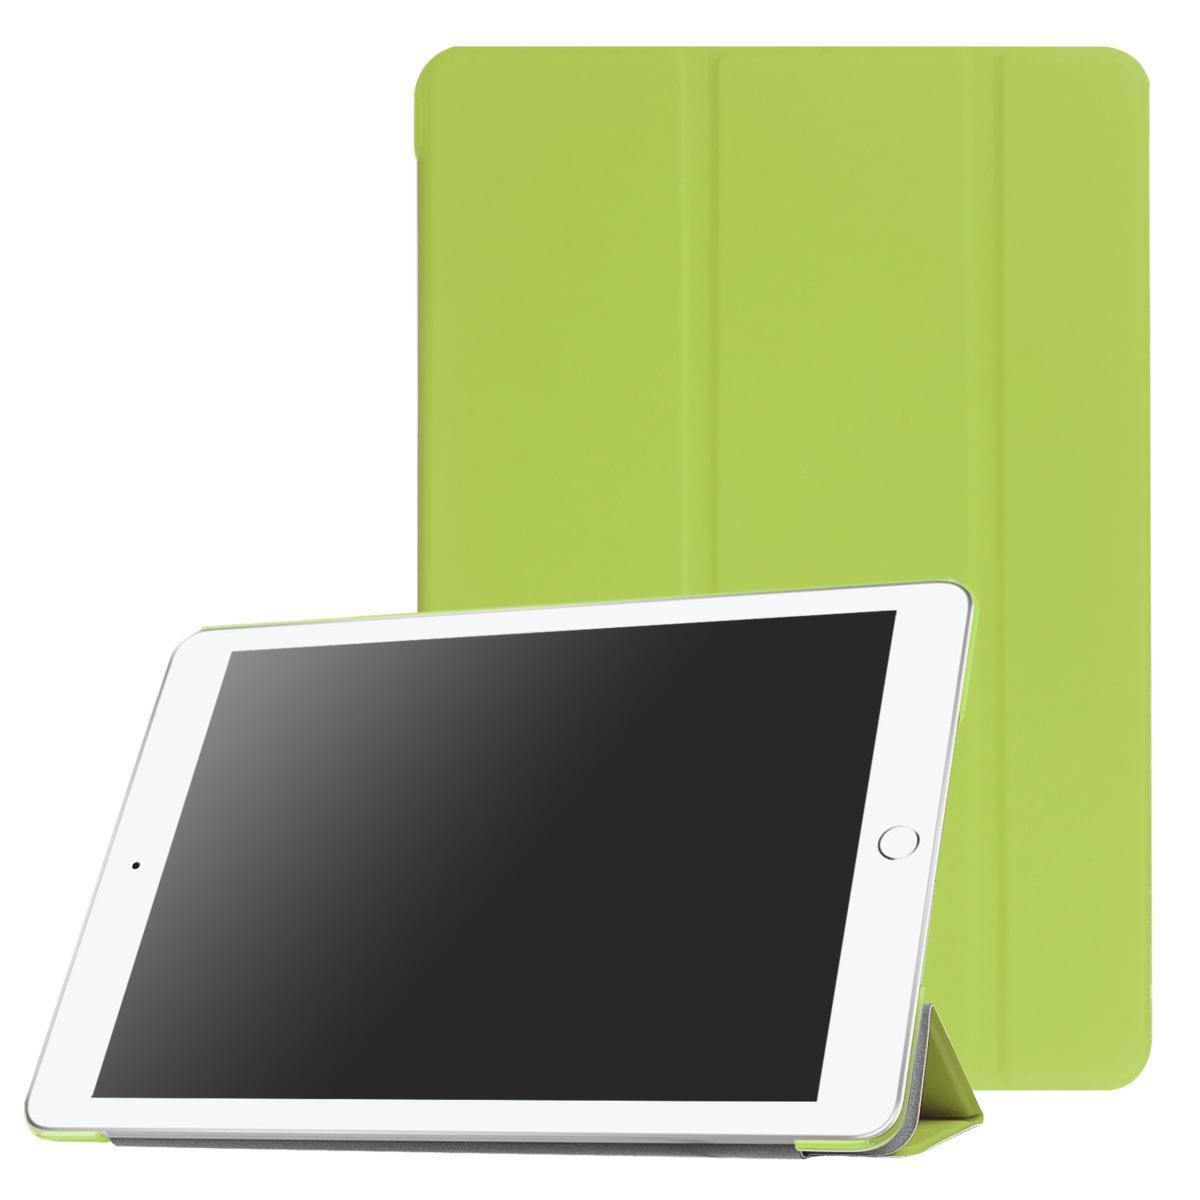 iPad ケース iPad5 / iPad6 / iPad Air1 / iPad Air2 兼用 三つ折スマートカバー PUレザー アイパッド カバー スタンド機能 グリーン_画像1